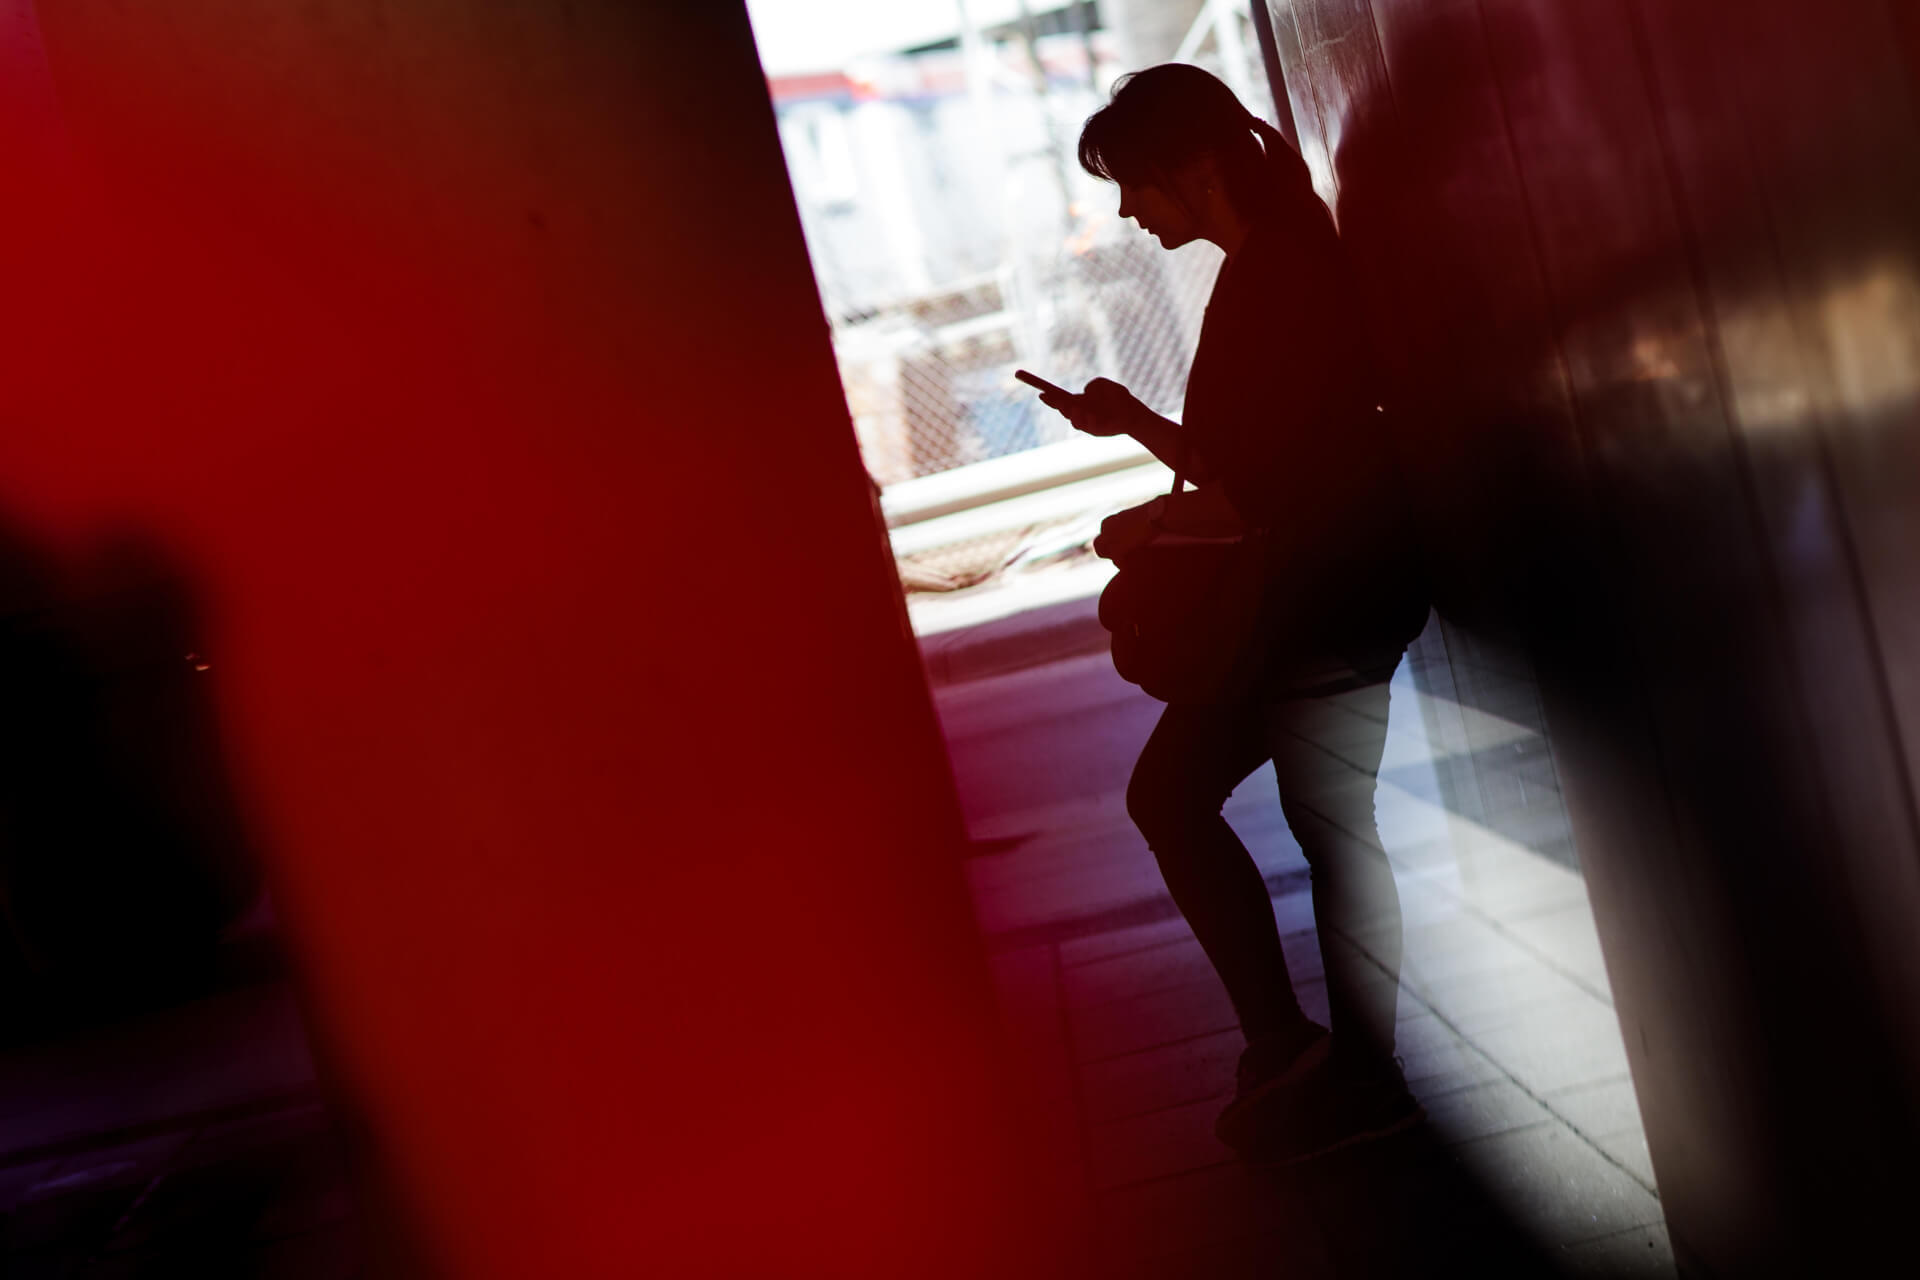 Étudiant utilisant son smartphone, contraste de lumière et d'ombre, ambiance moderne.